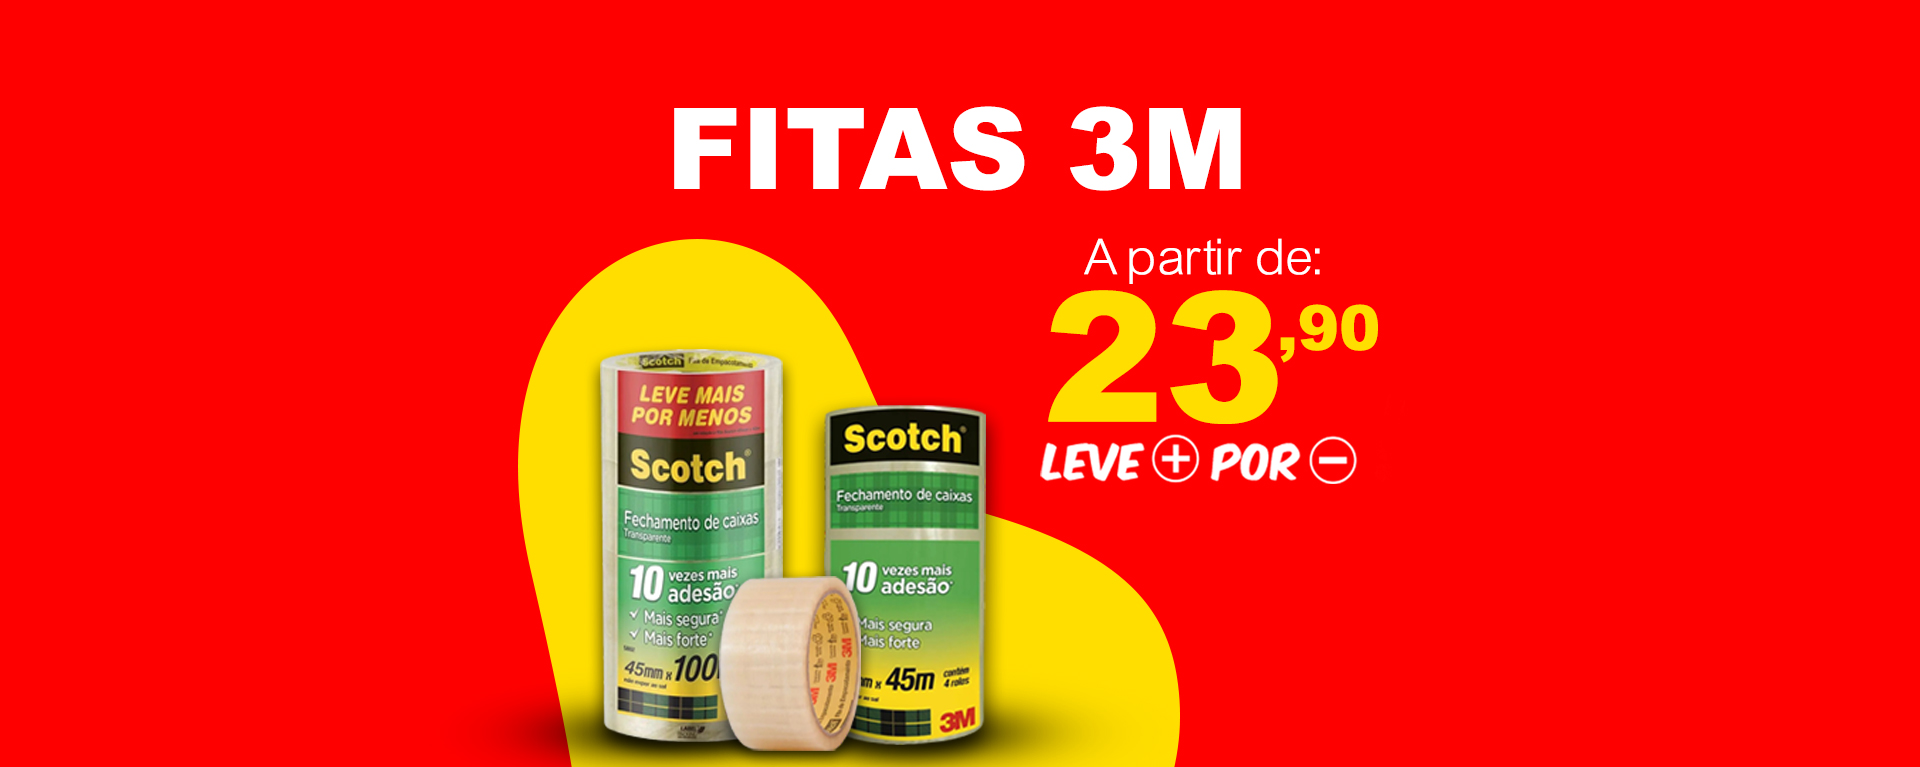 FITAS 3M